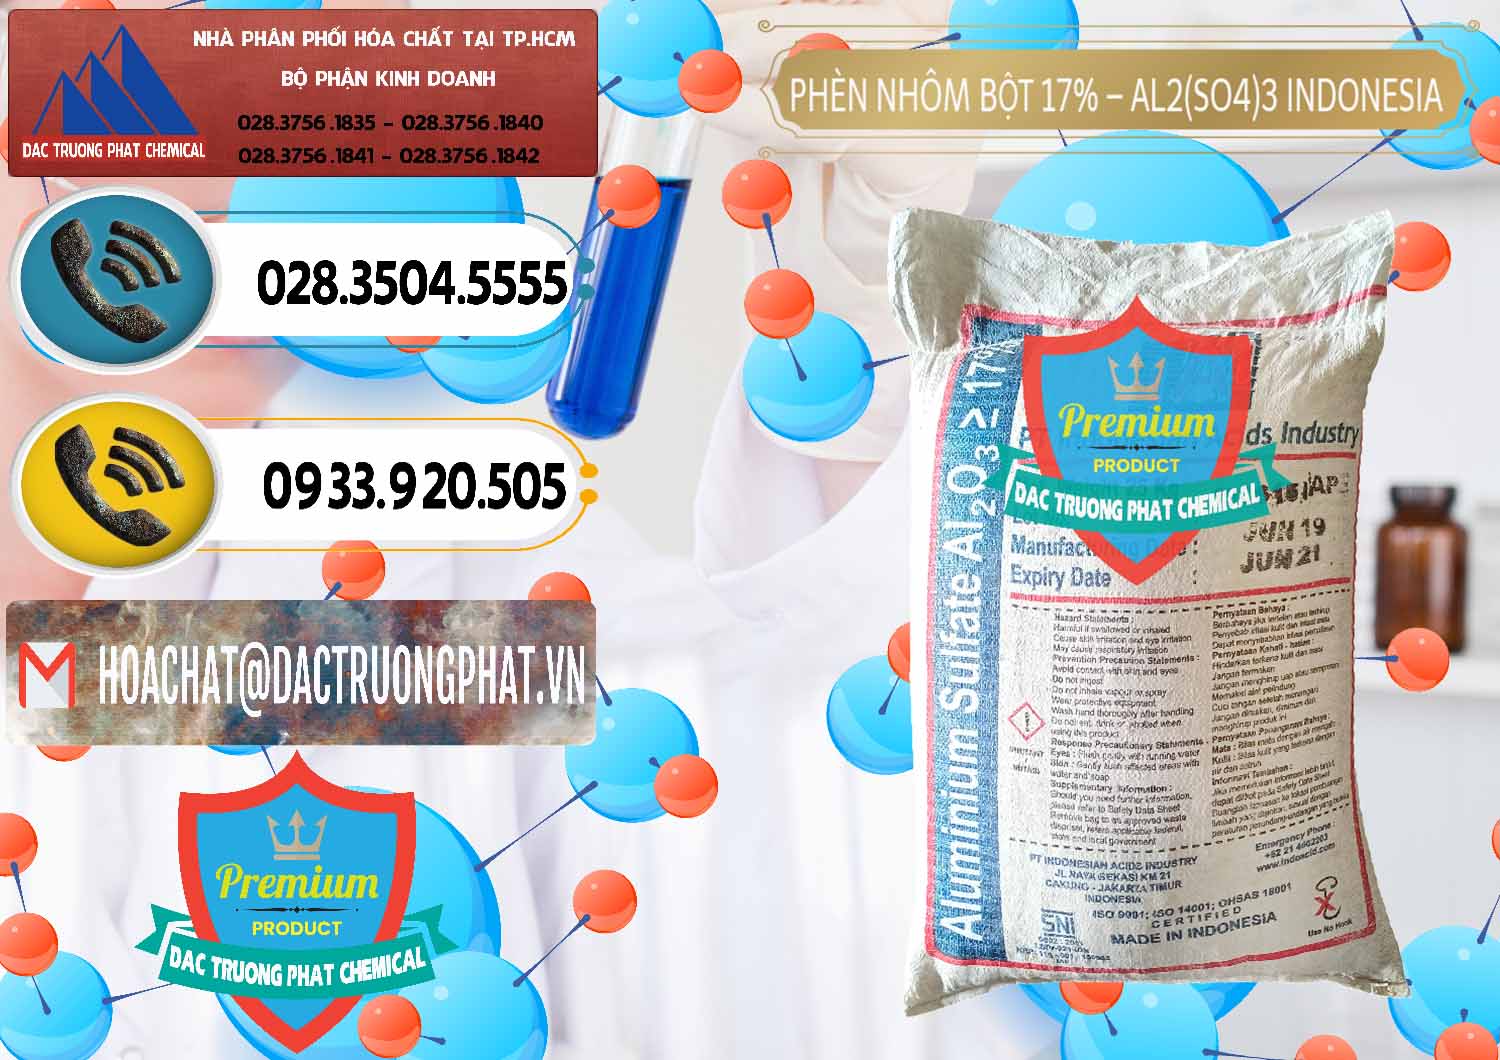 Công ty chuyên bán ( cung ứng ) Phèn Nhôm Bột - Al2(SO4)3 17% bao 25kg Indonesia - 0114 - Công ty phân phối ( bán ) hóa chất tại TP.HCM - hoachatdetnhuom.vn